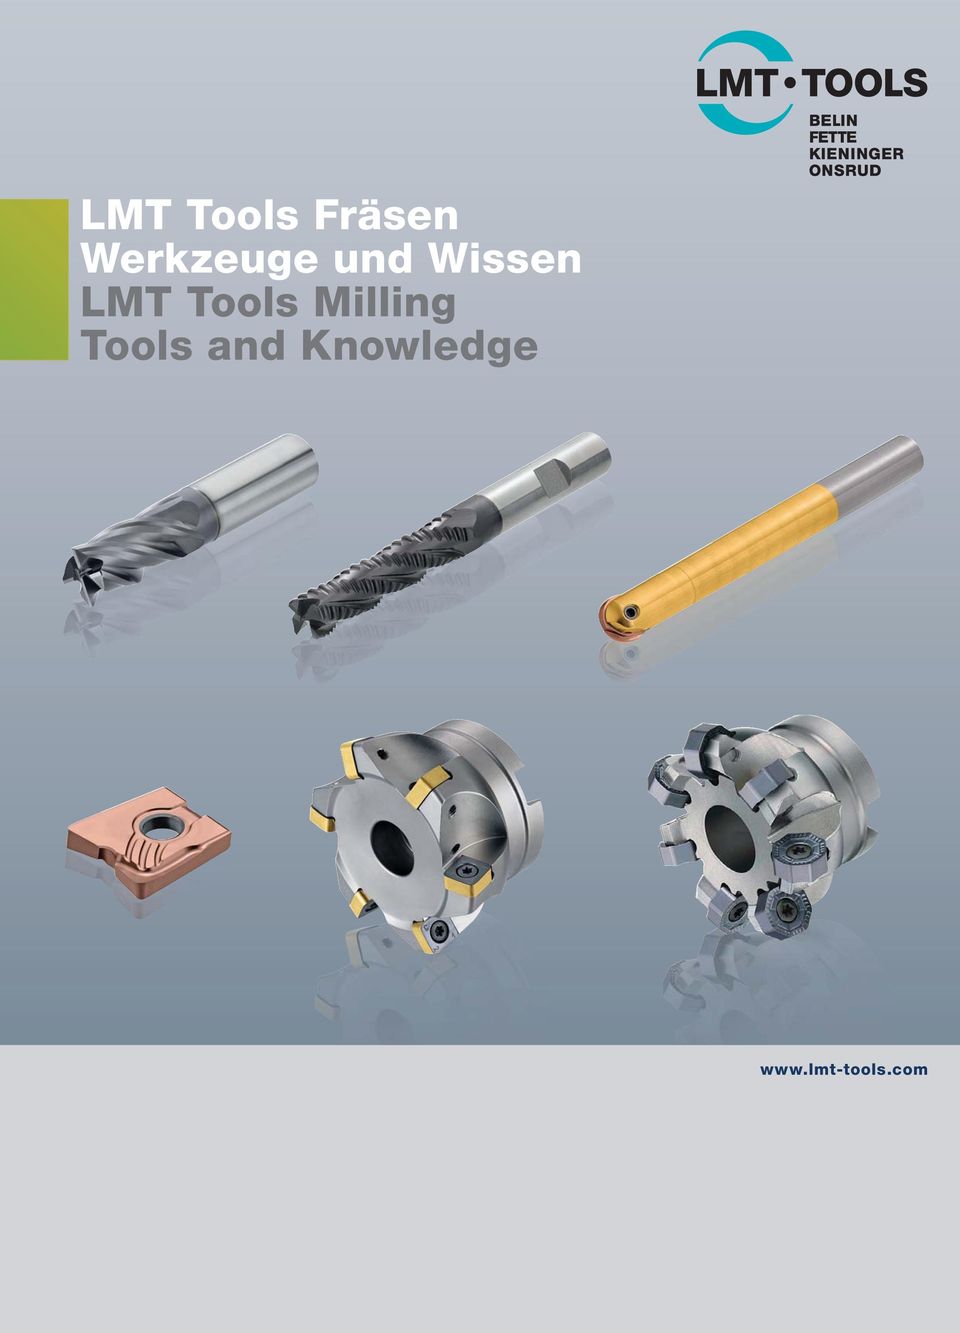 LMT Tools Milling Tools